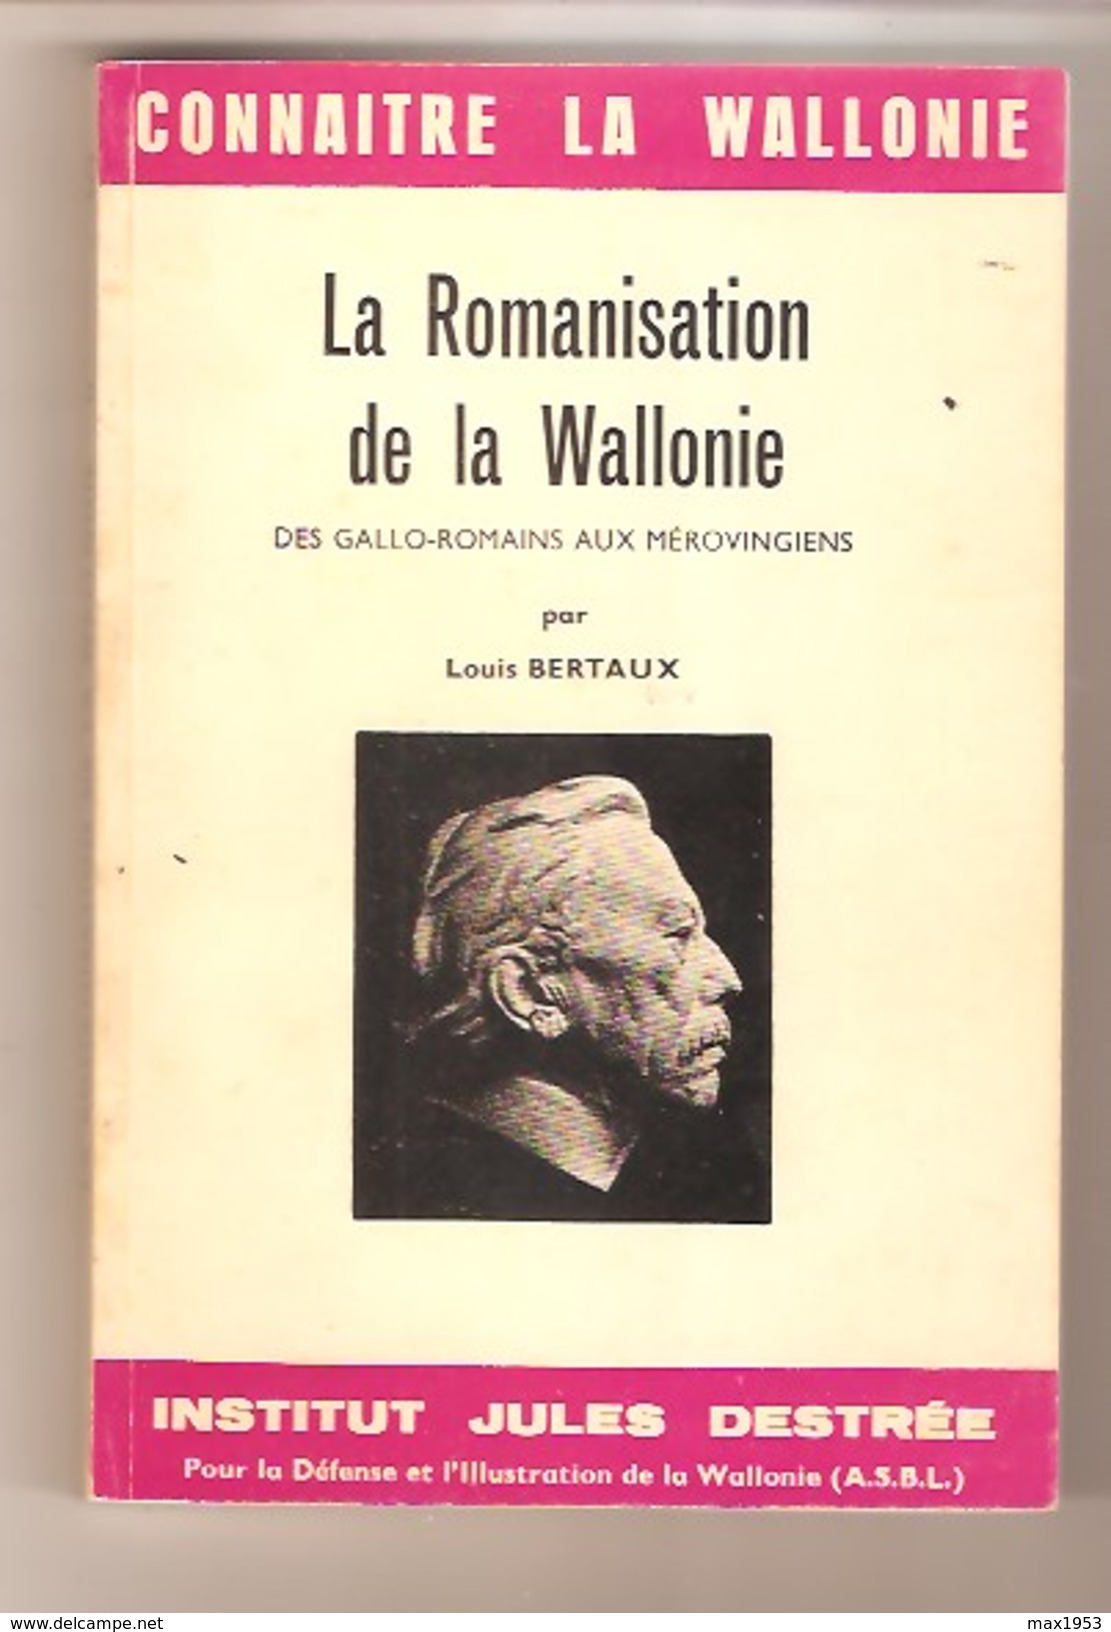 Louis BERTAUX - La Romanisation De La Wallonie - Des Gallo-romains Aux Mérovingiens - Institut Jules Destrée - 1970 - Belgique